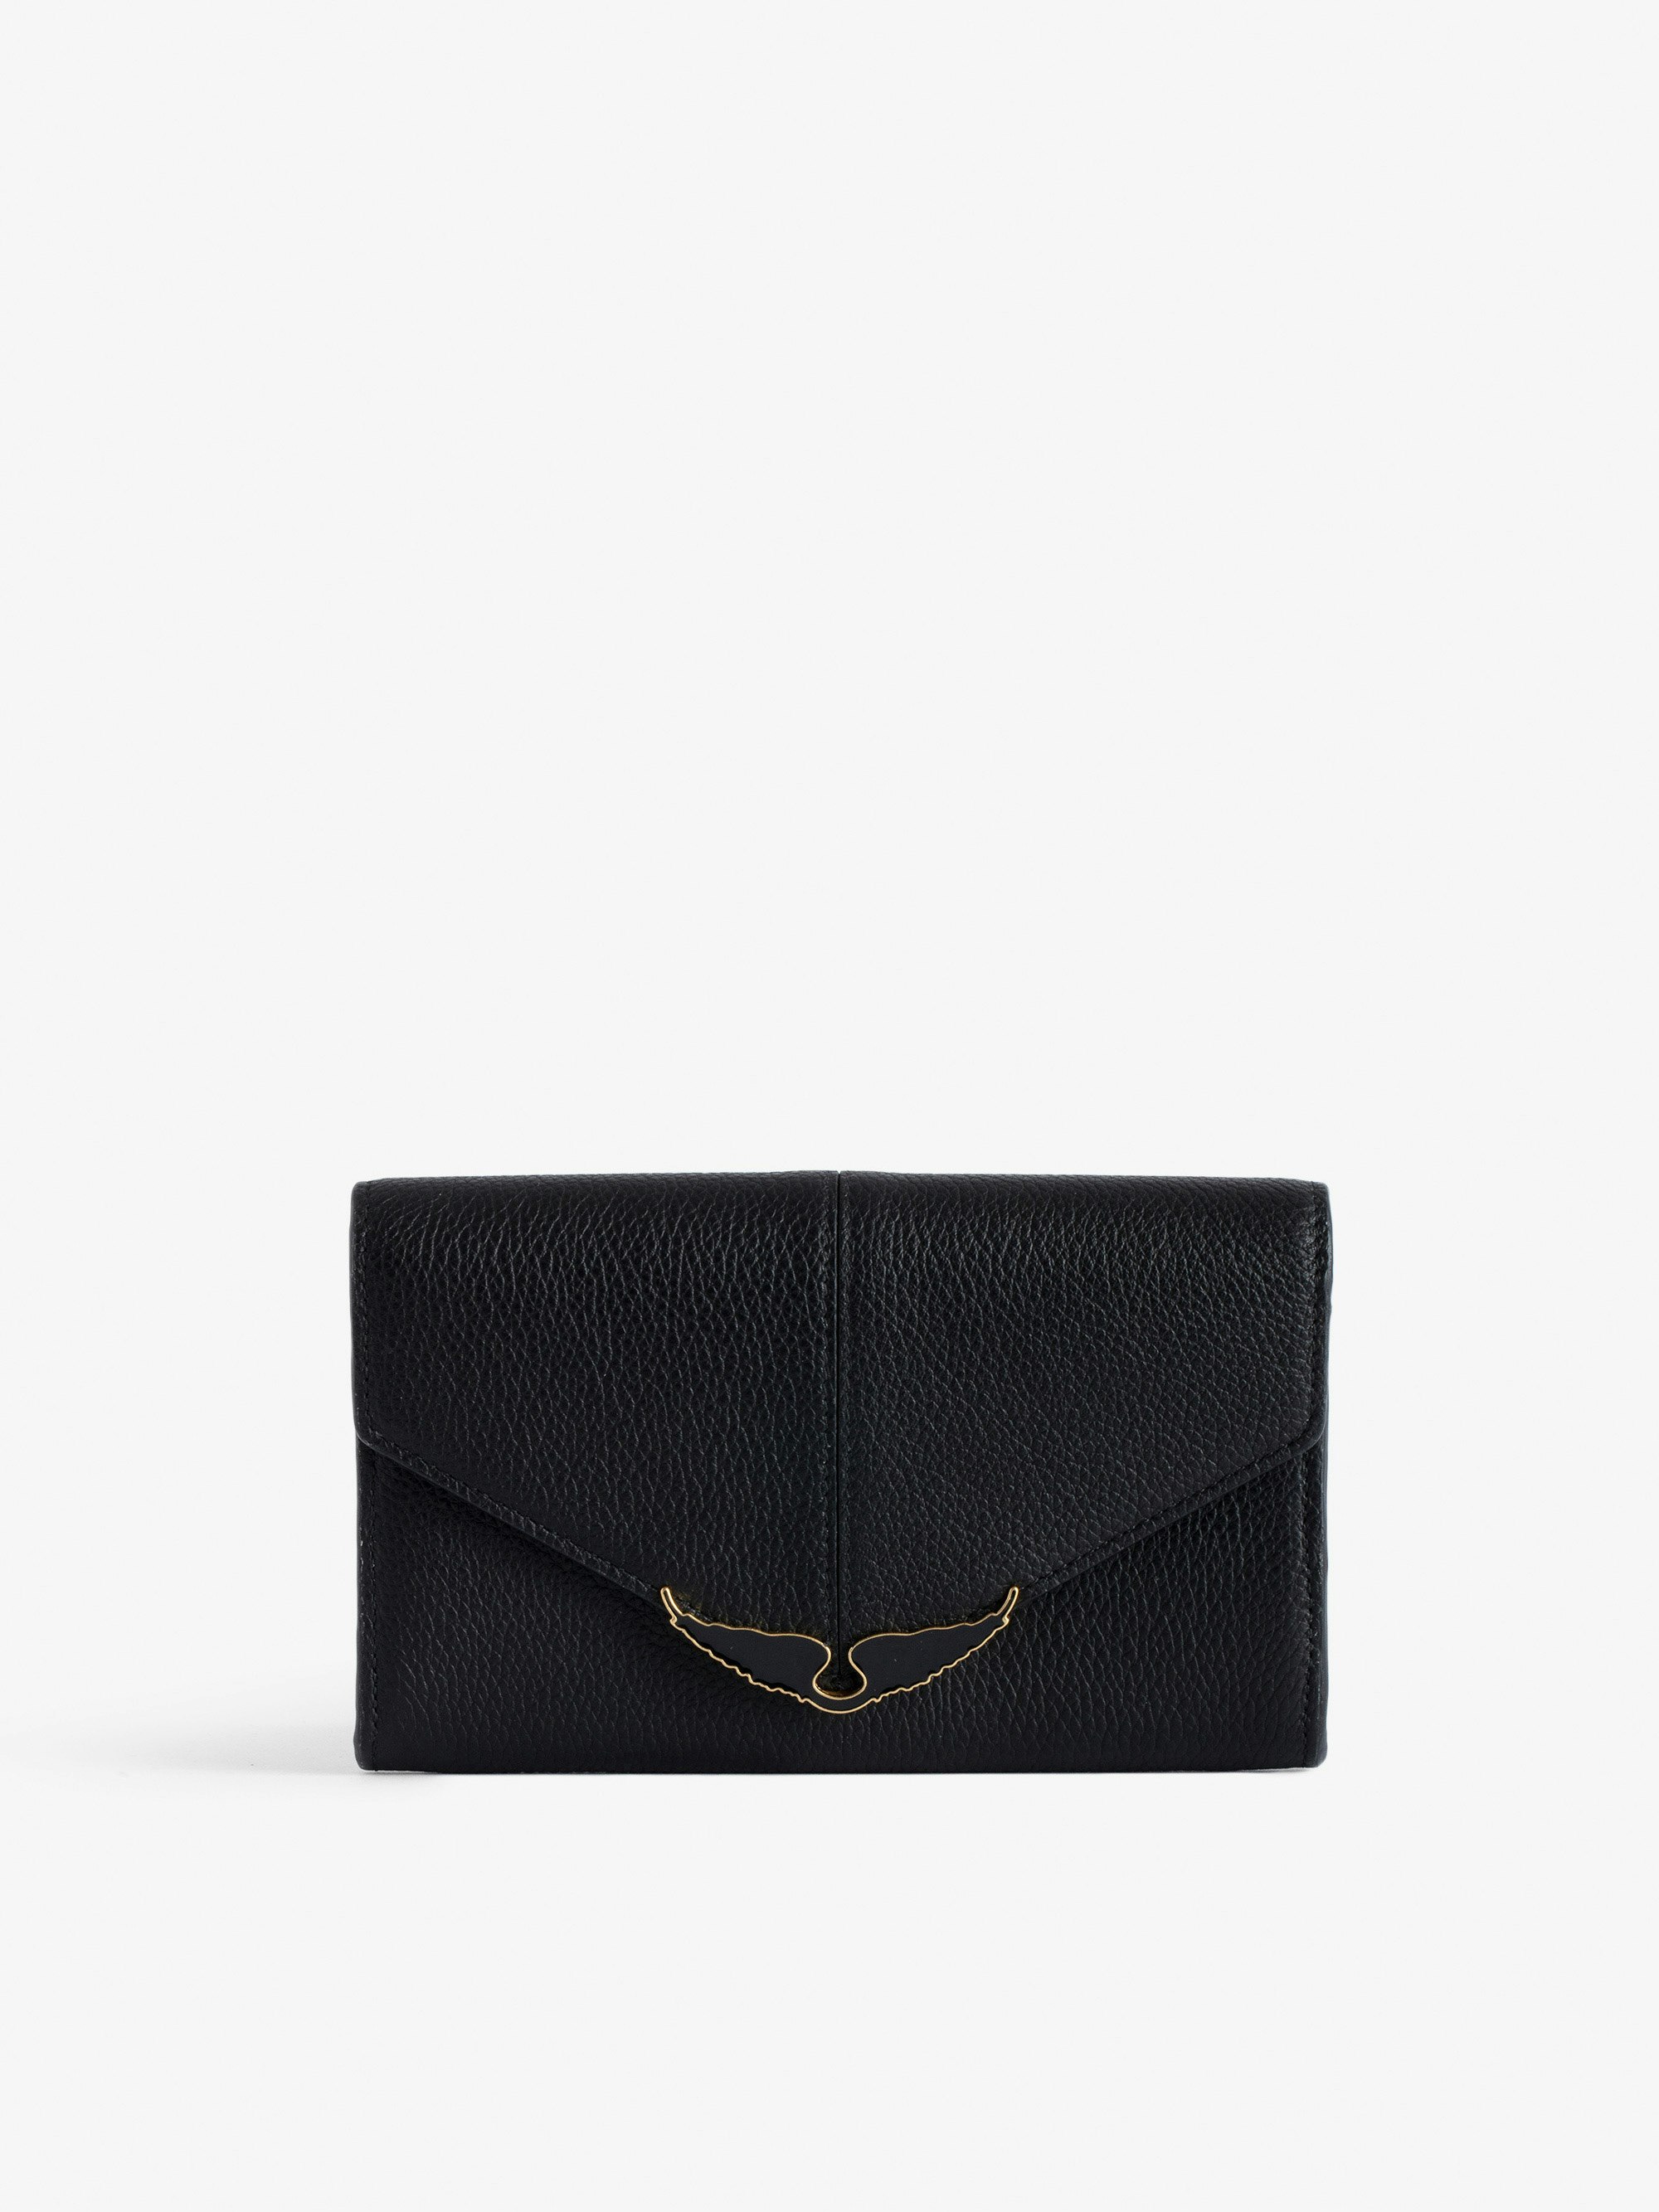 Brieftasche Borderline - Schwarze Brieftasche aus genarbtem Lackleder mit Flügel-Charm für Damen.